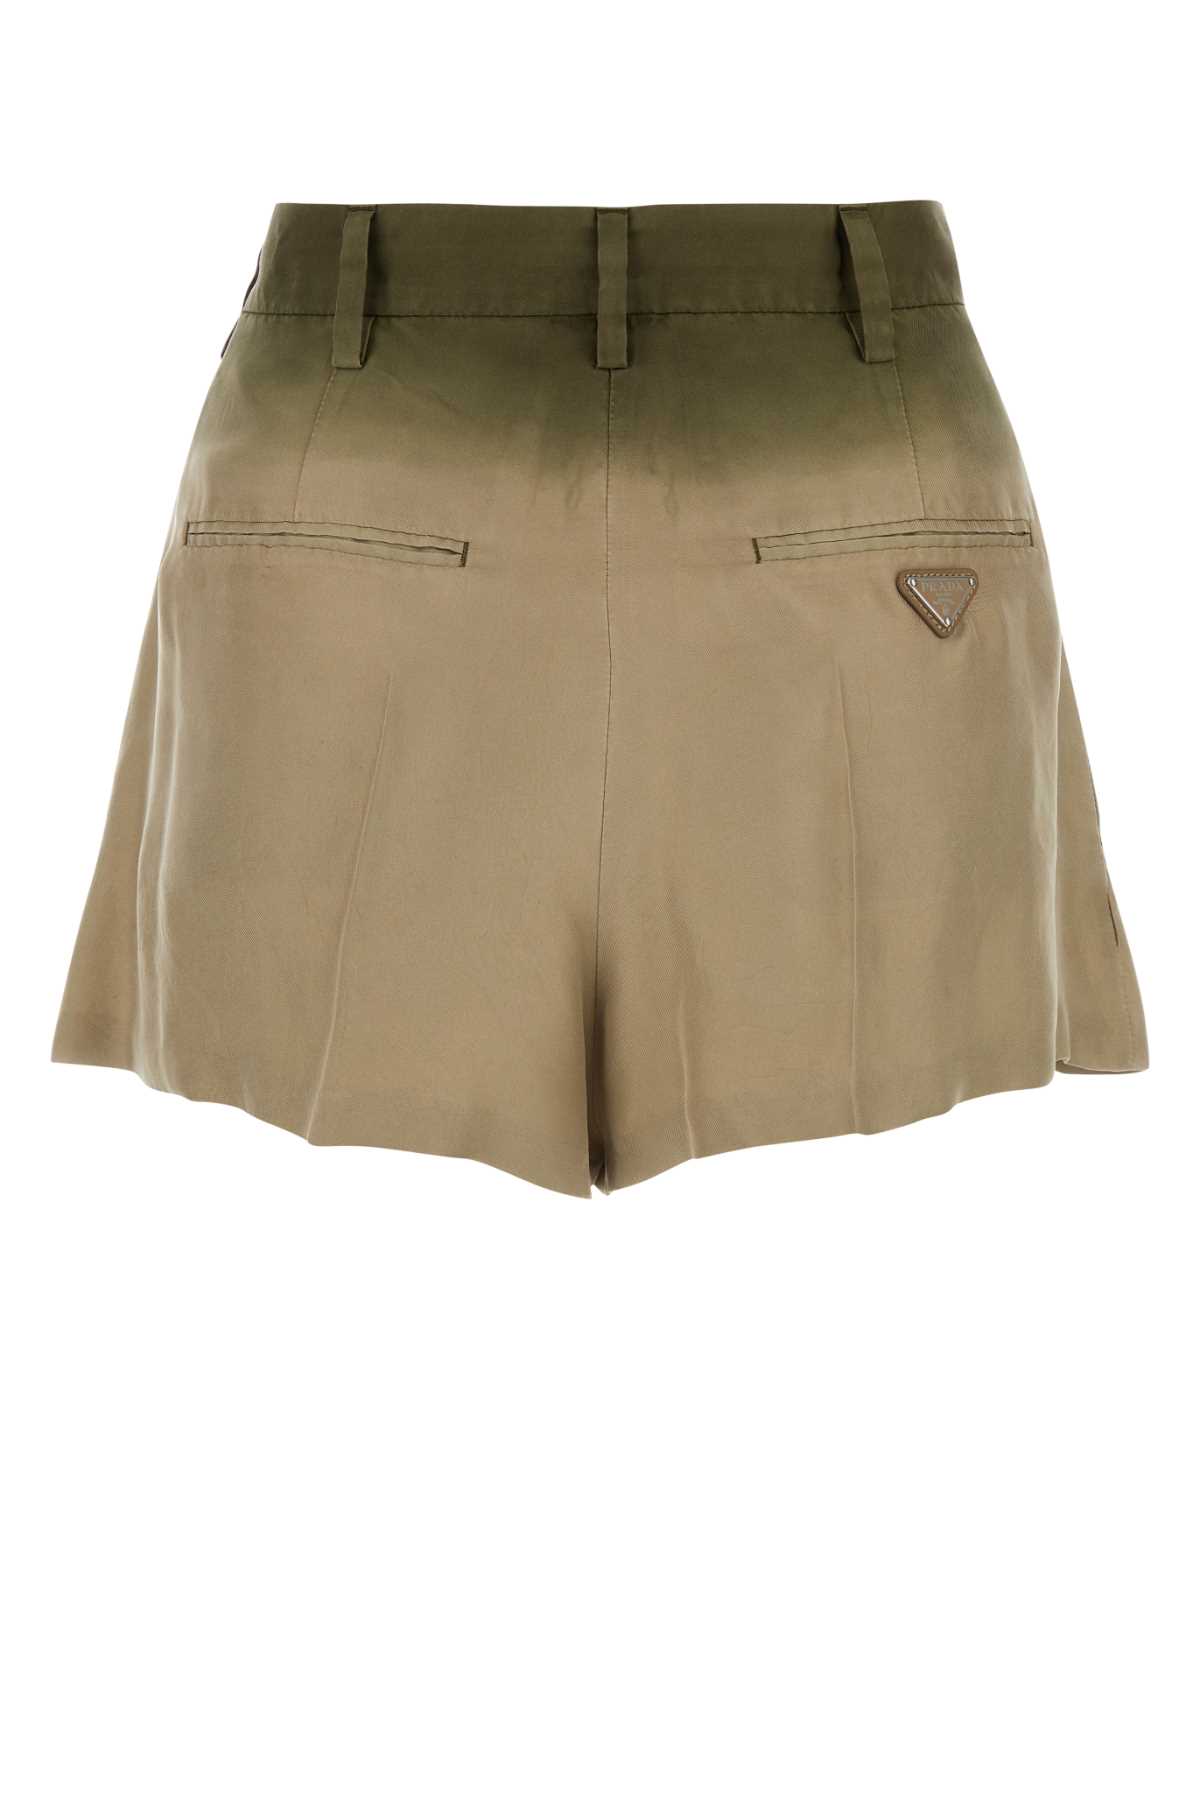 Prada Sage Green Silk Shorts